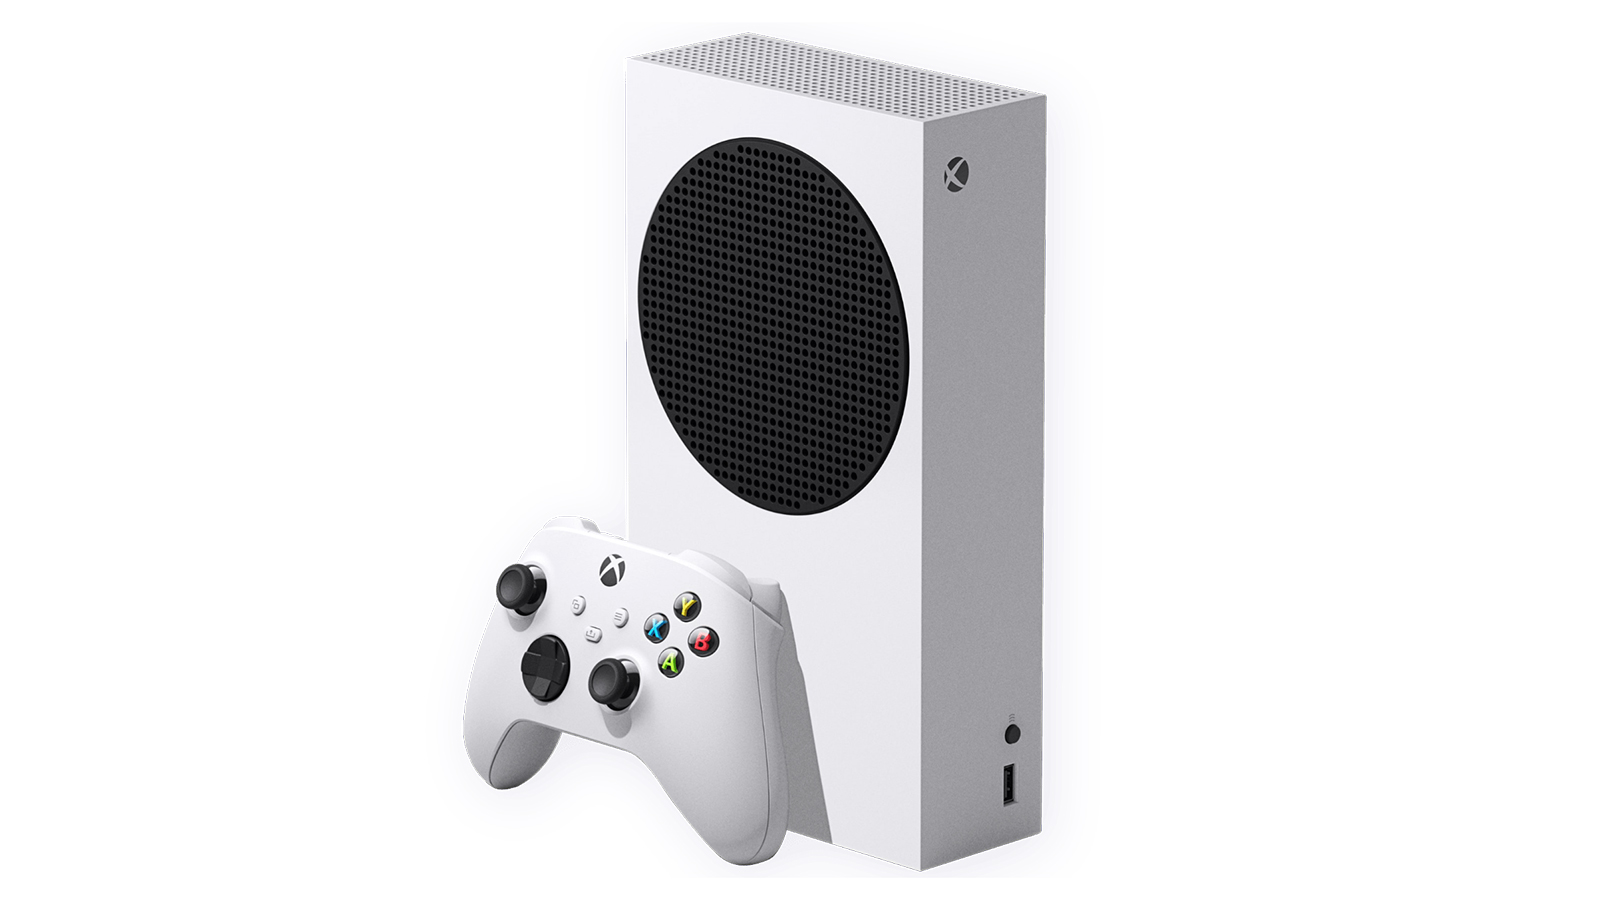 Bon plan – une manette Xbox offerte pour l'achat d'une console